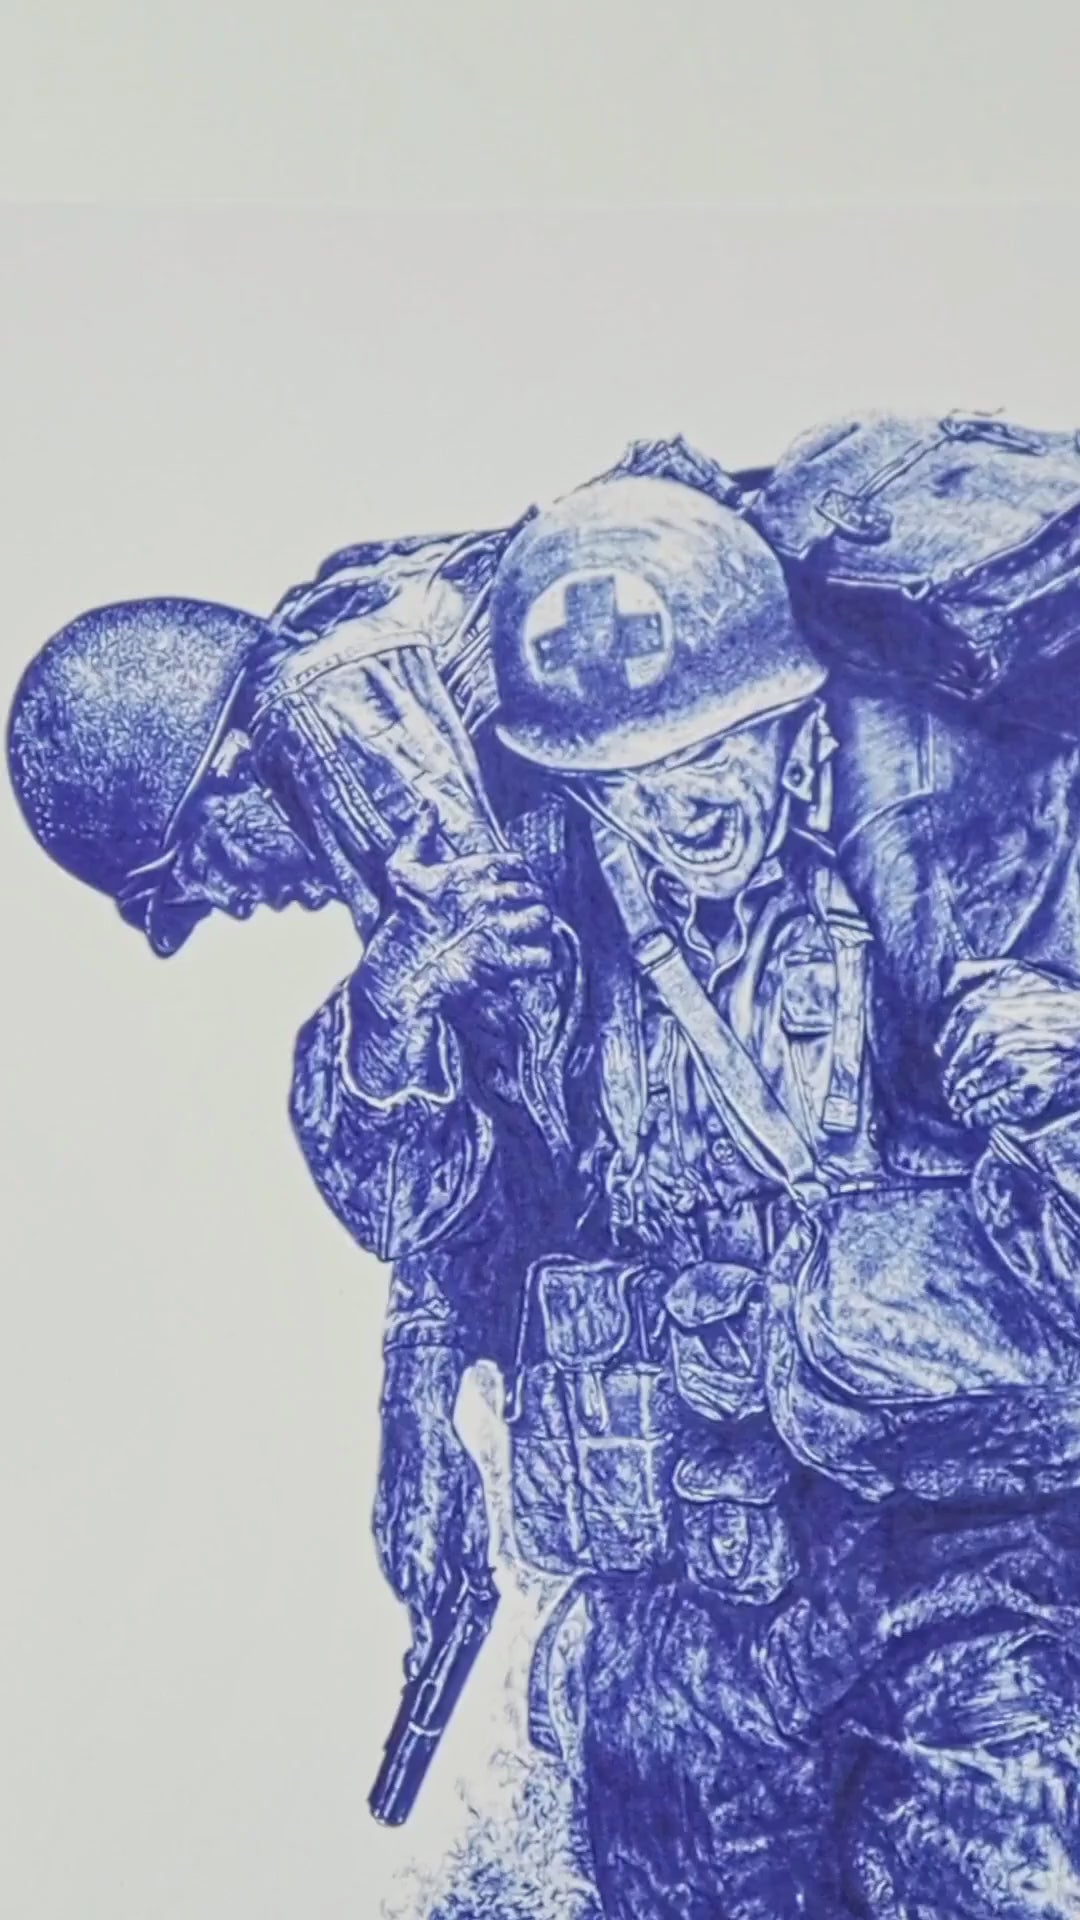 Vente d'art - Œuvre d'Art Unique : L'Héroïsme d'un Soldat, Dessin réaliste au stylo